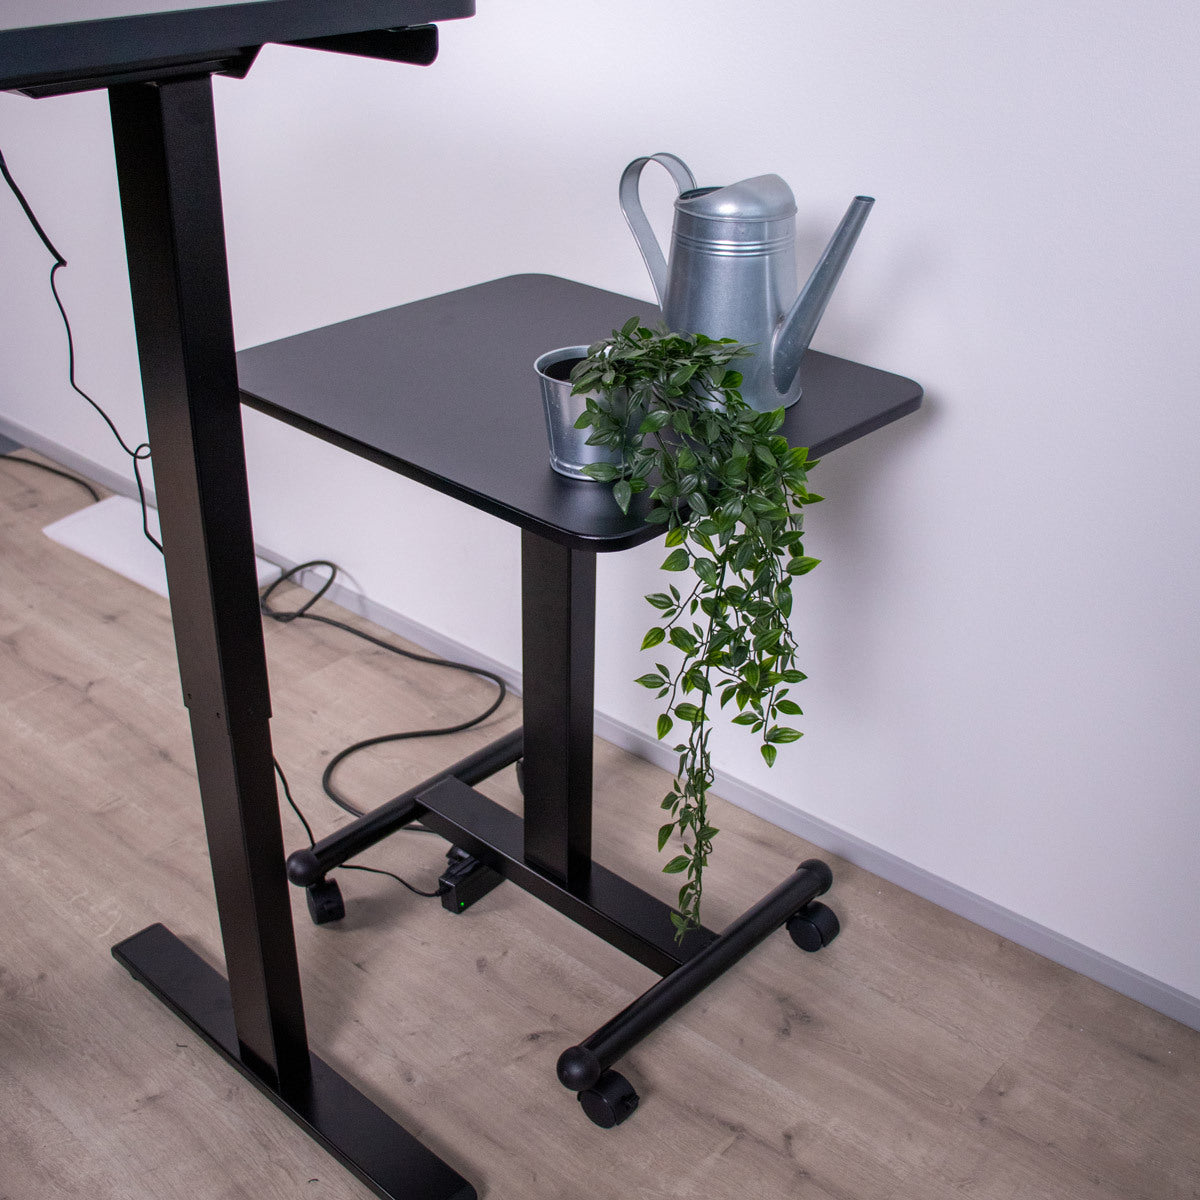 Lykke Mobile Standing Desk L100, 60 x 52cm